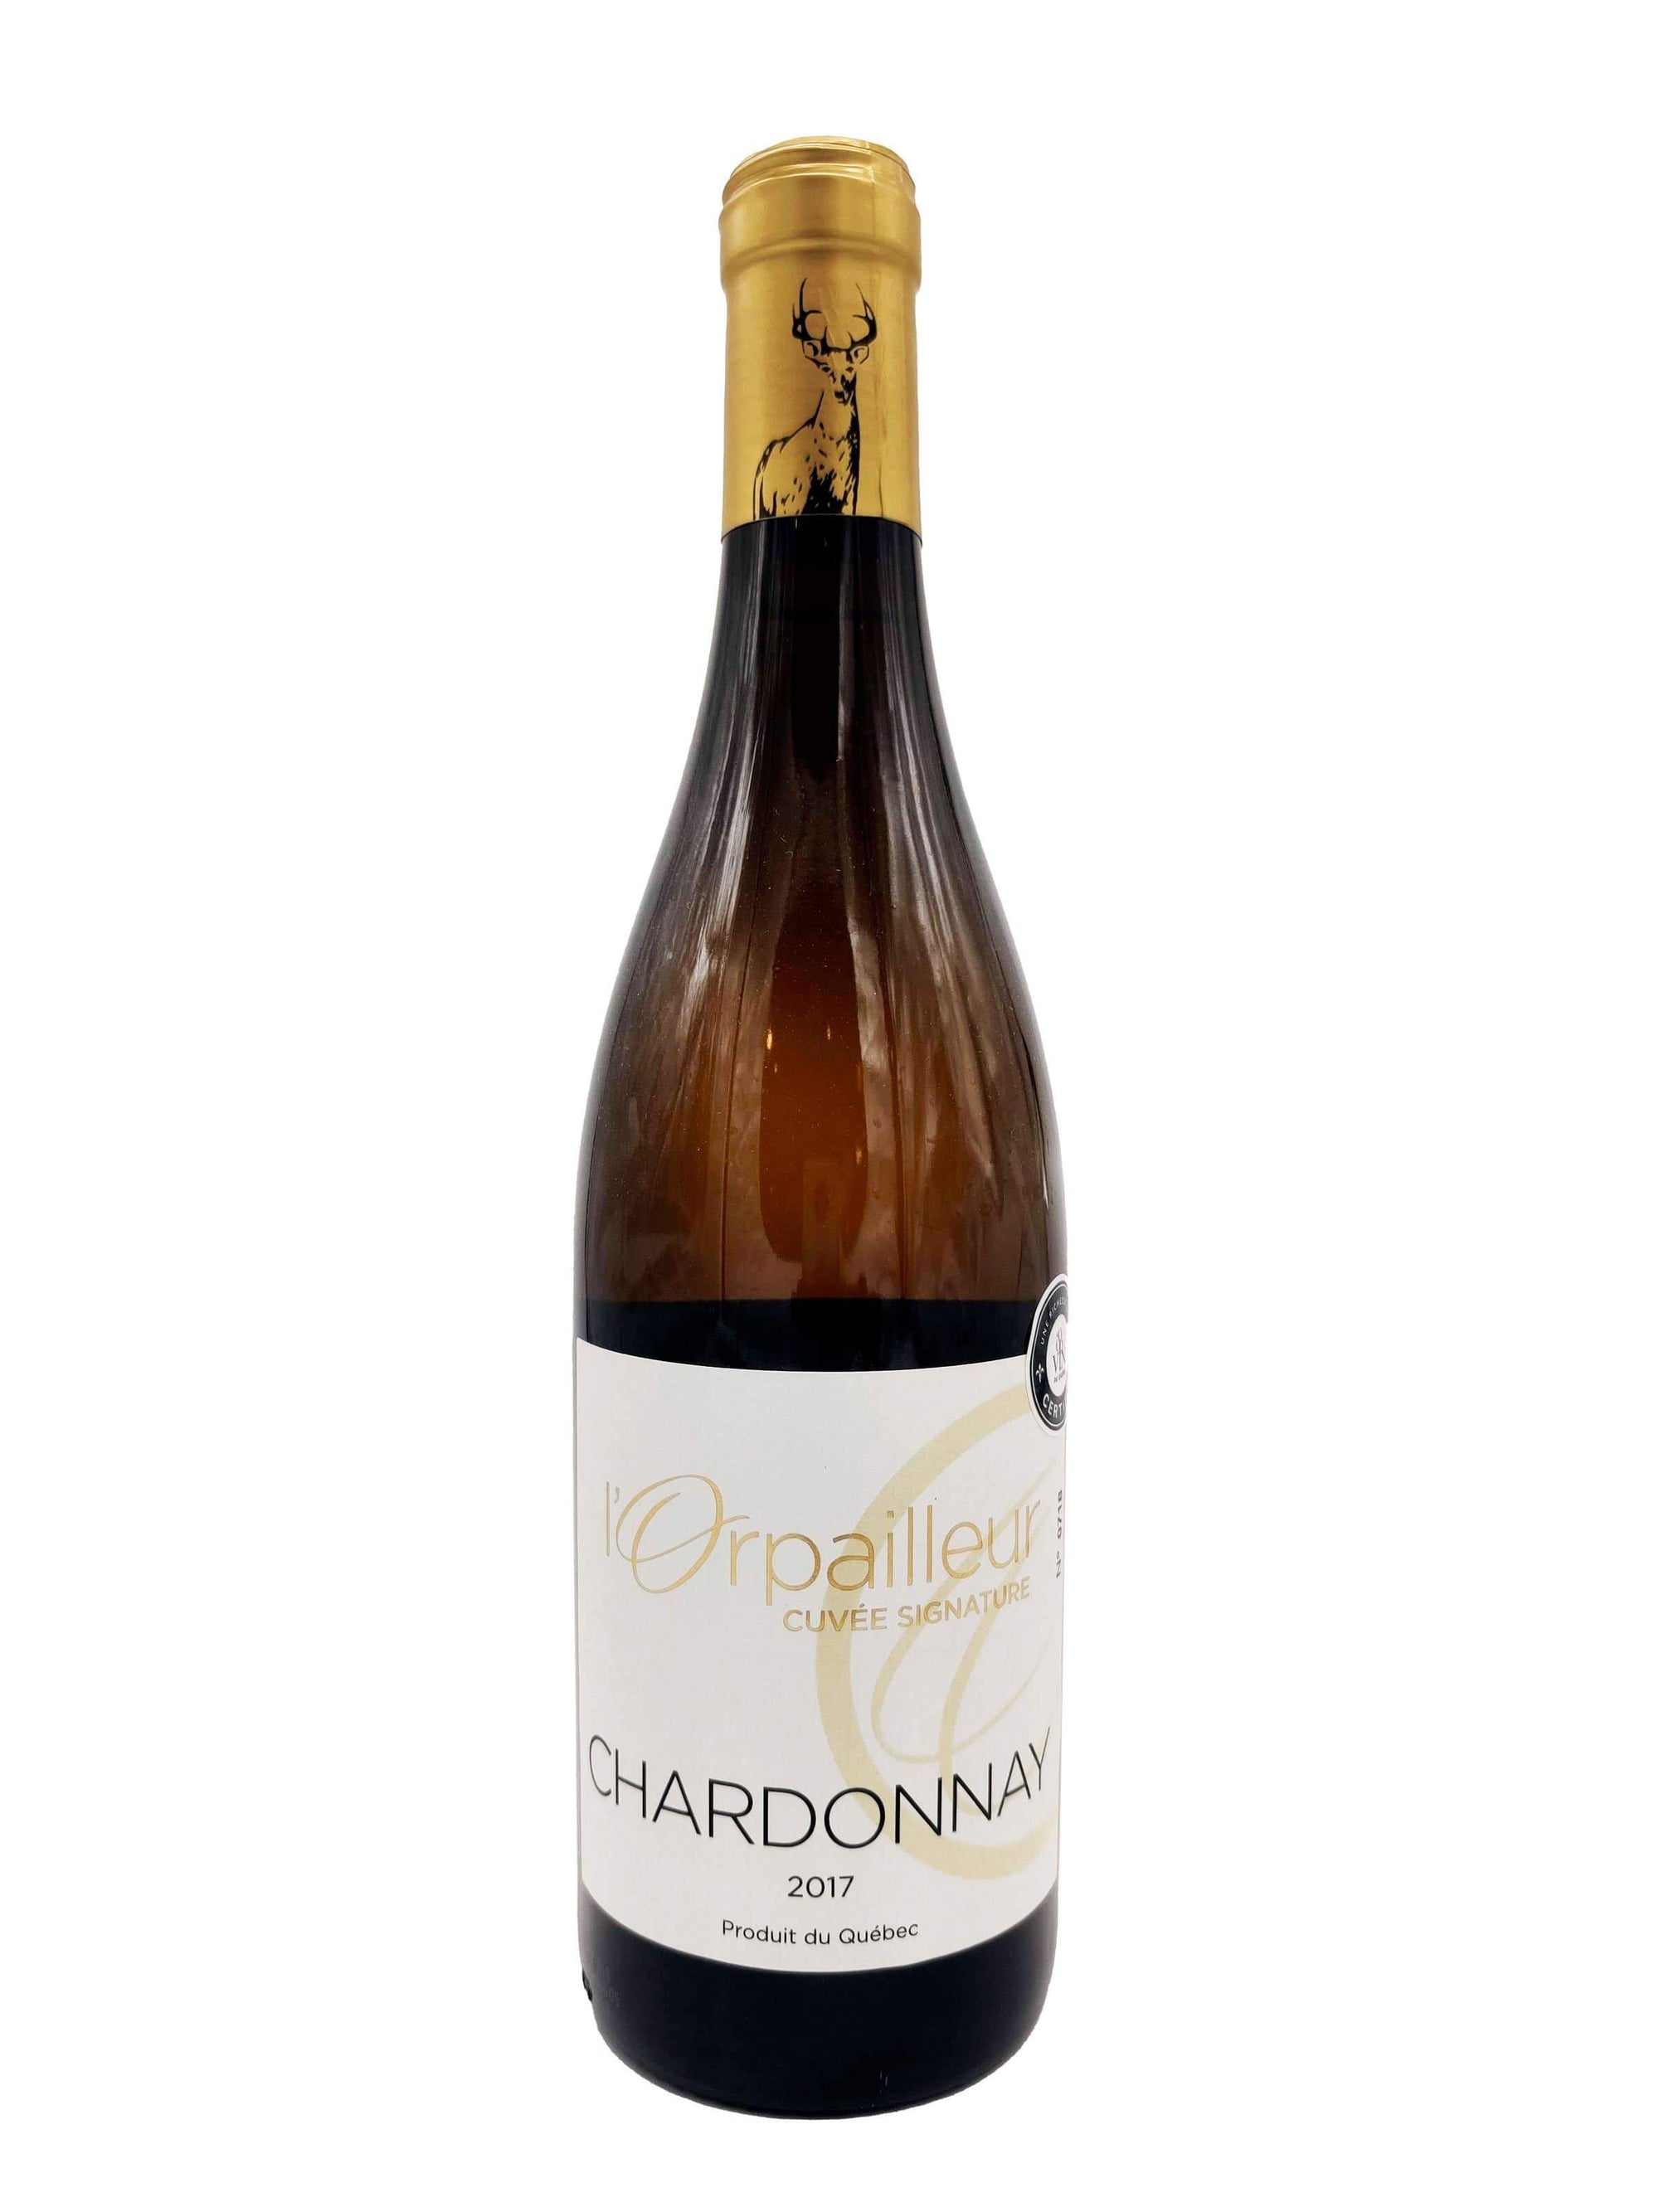 Chardonnay - Vin blanc du Vignoble de l’Orpailleur